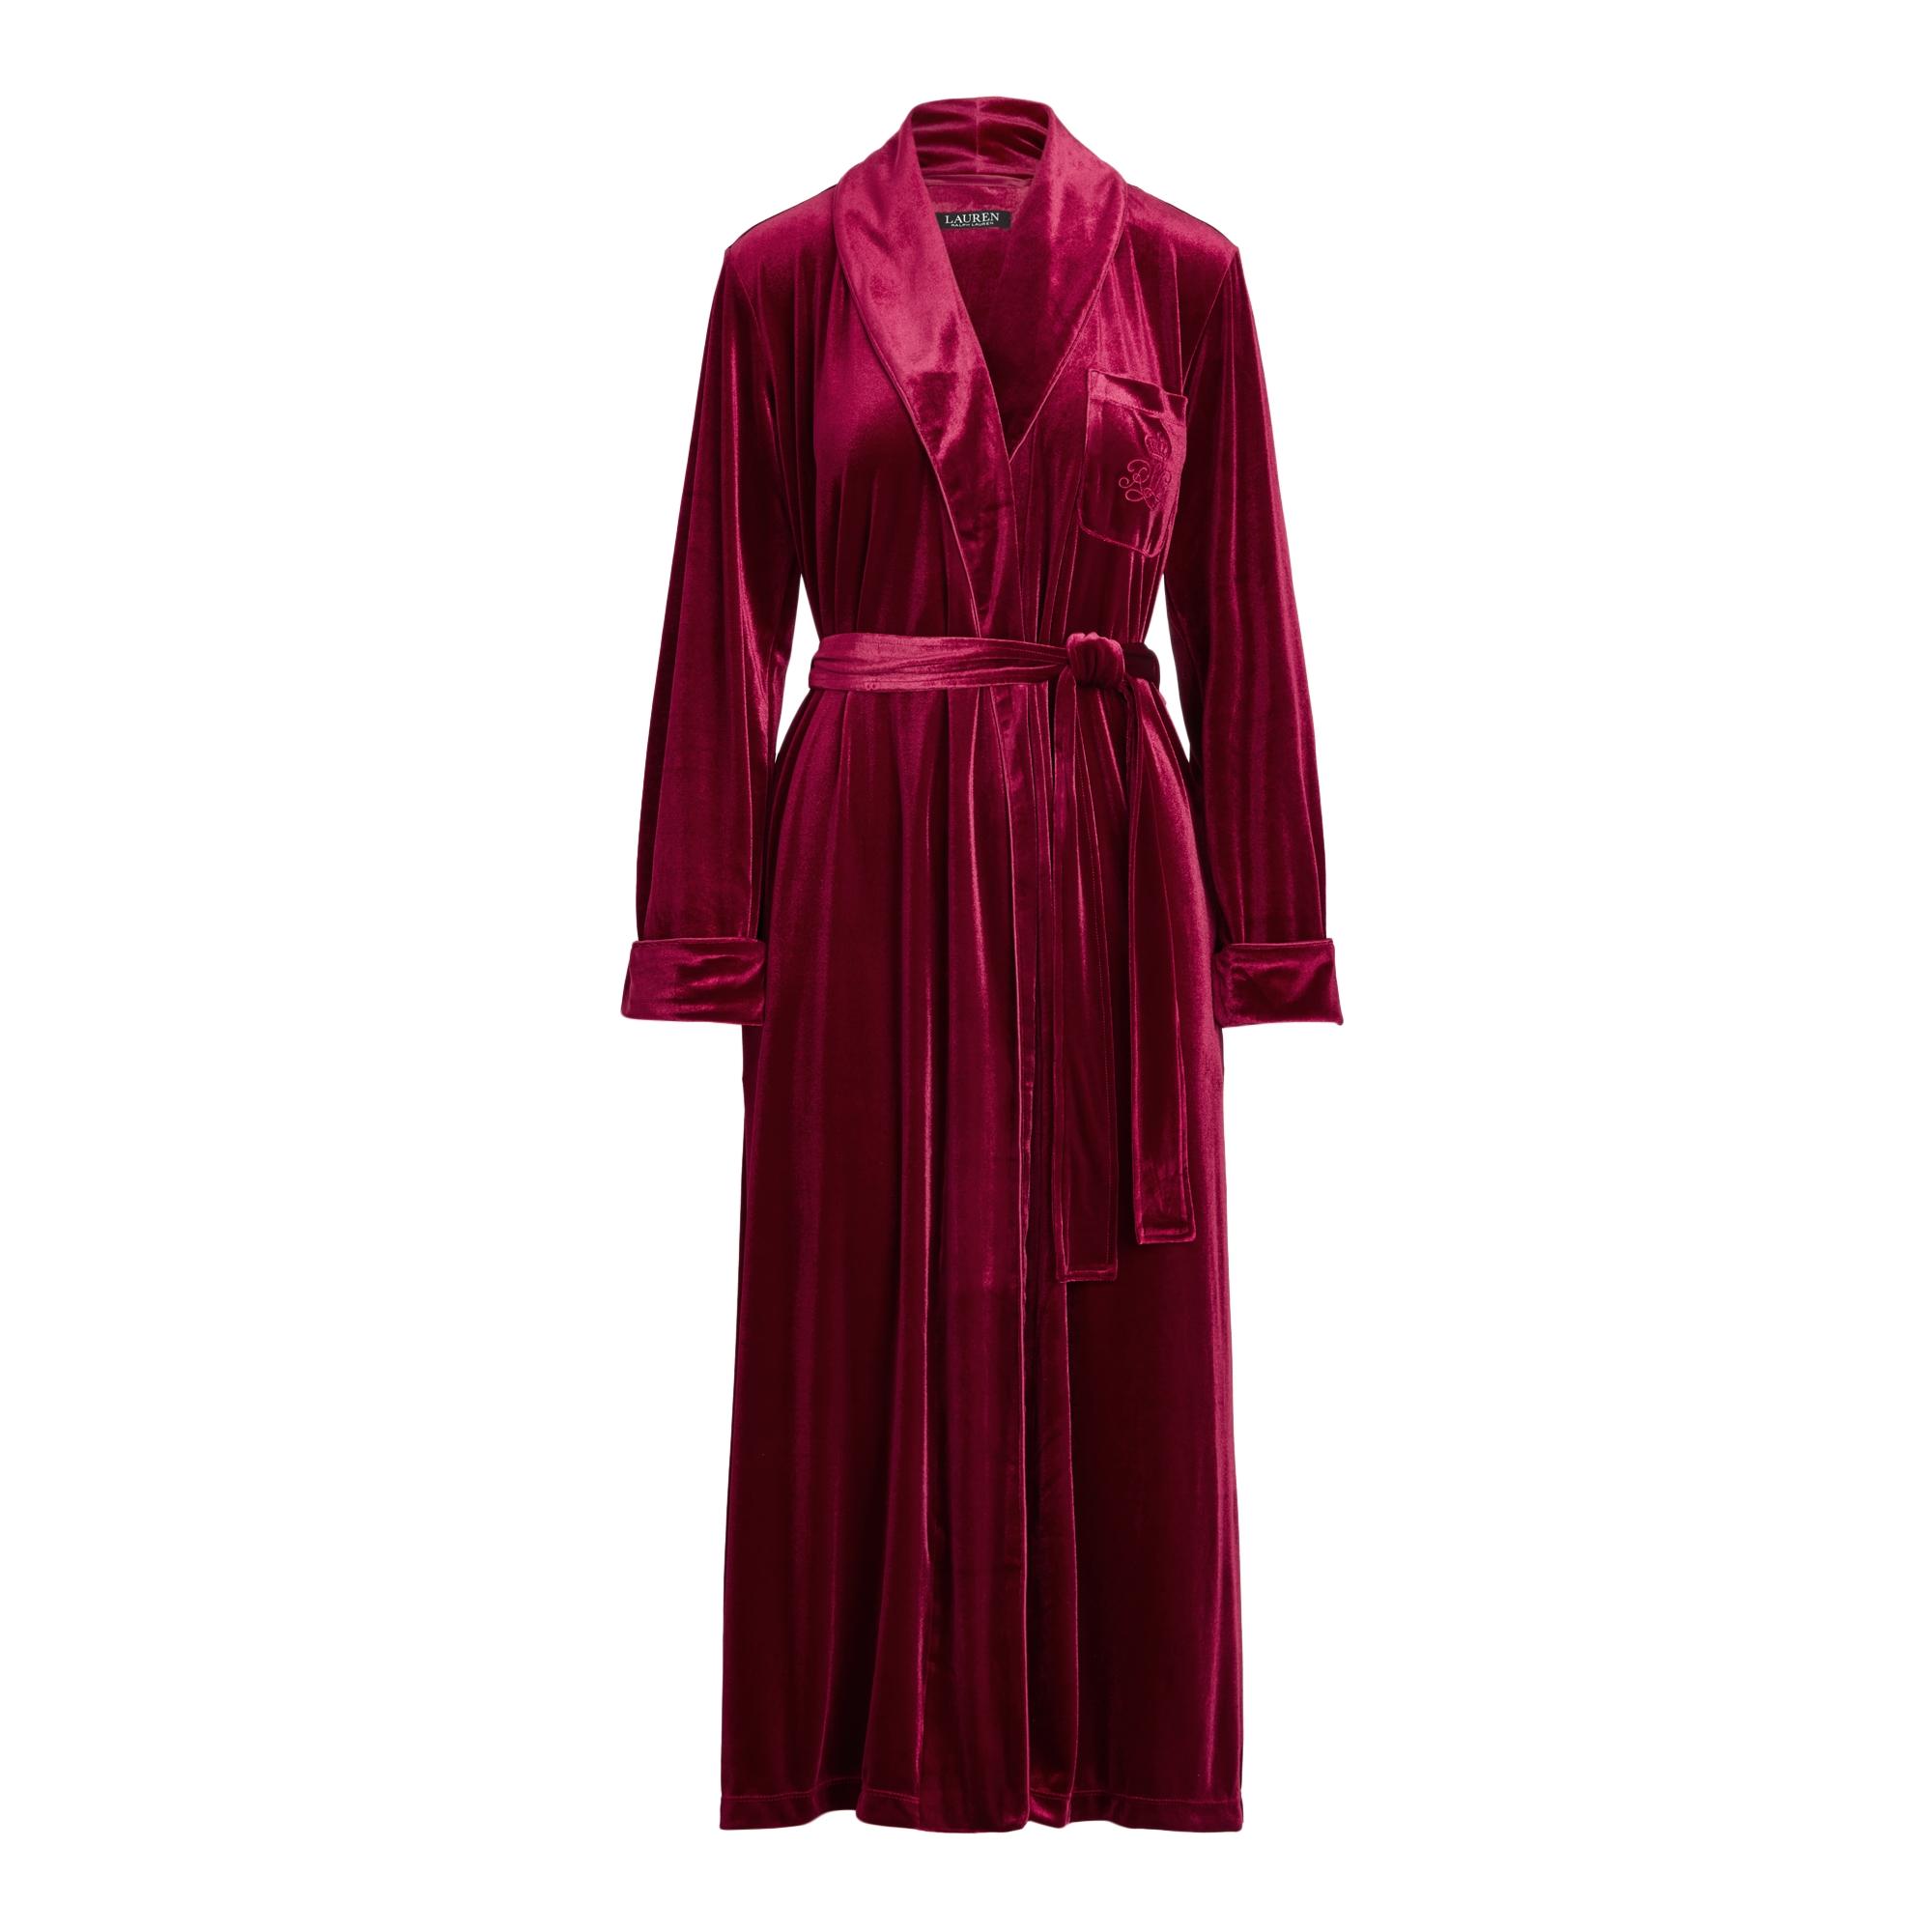 Ralph Lauren Velvet Long Shawl-collar Robe in Berry (Red) - Lyst